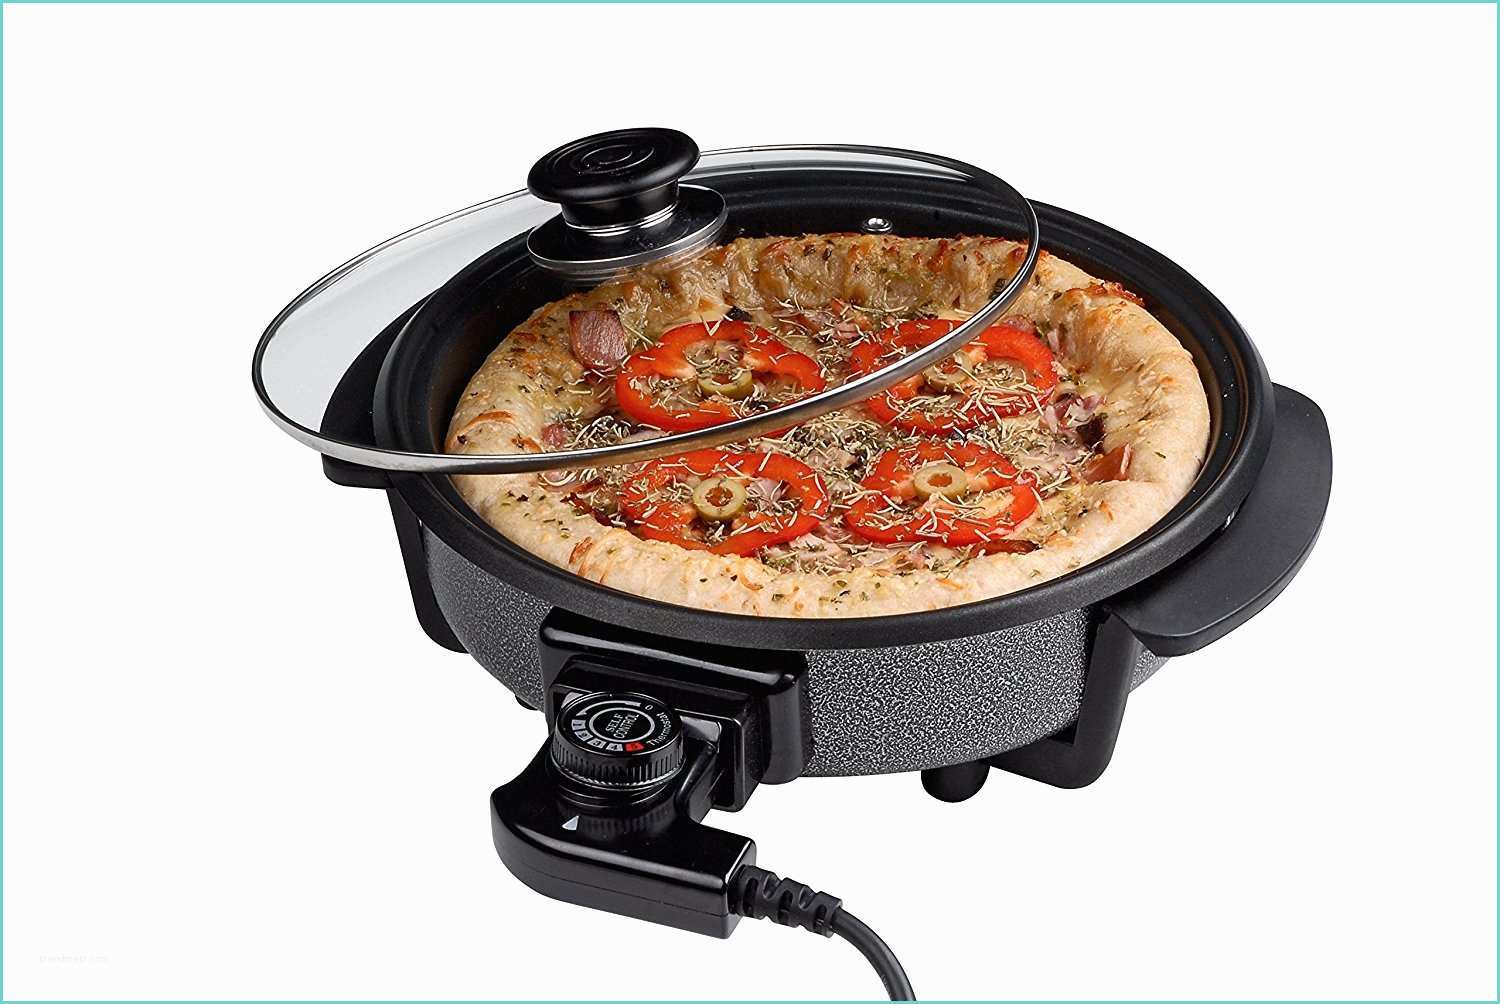 Four A Pizza Electrique Pour Particulier Notre Test De La Plaque De Cuisson De Pizza Cuisinier